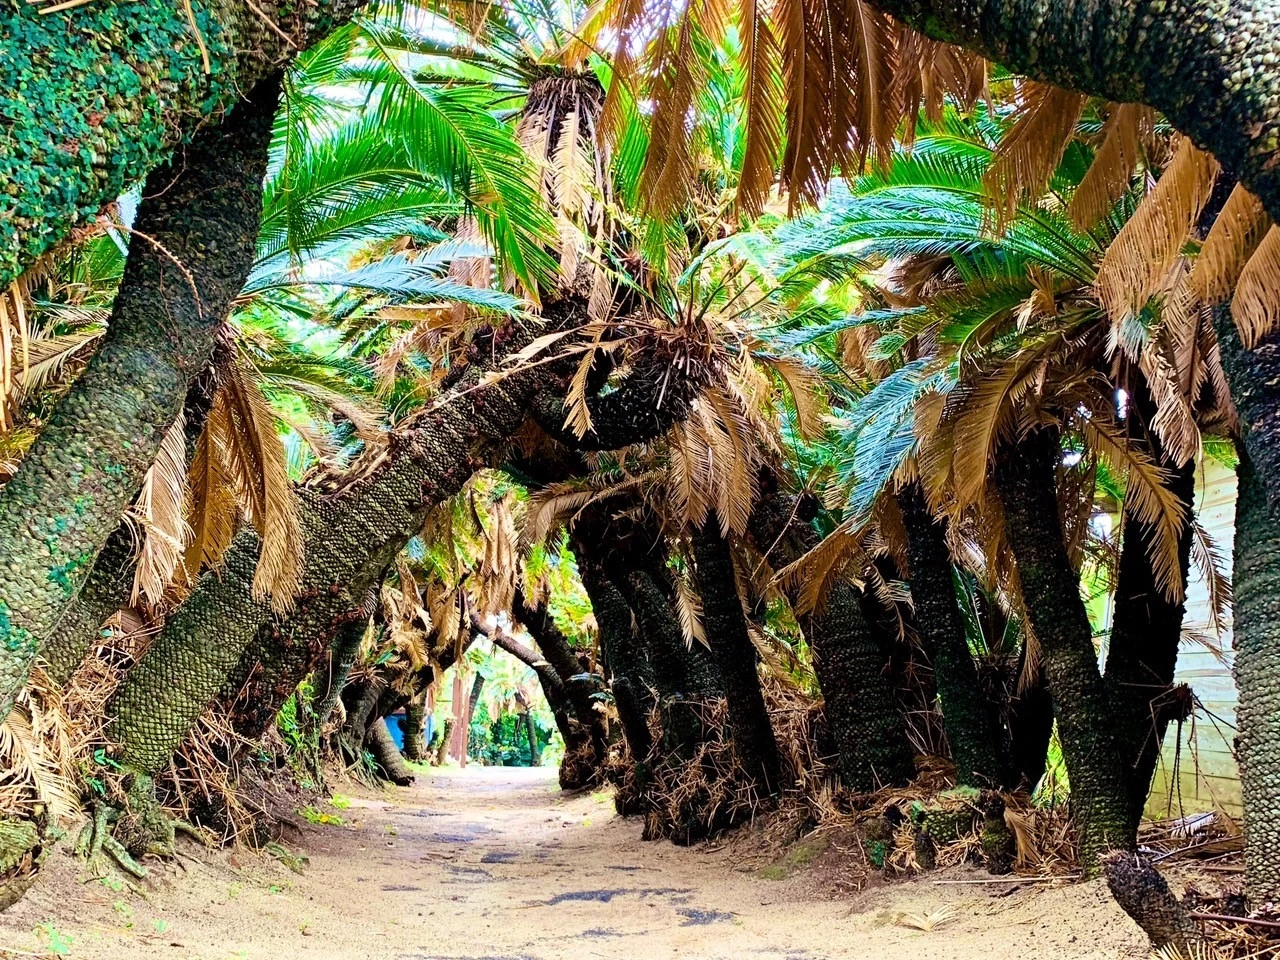 ソテツは沖縄や奄美群島で見られる低木